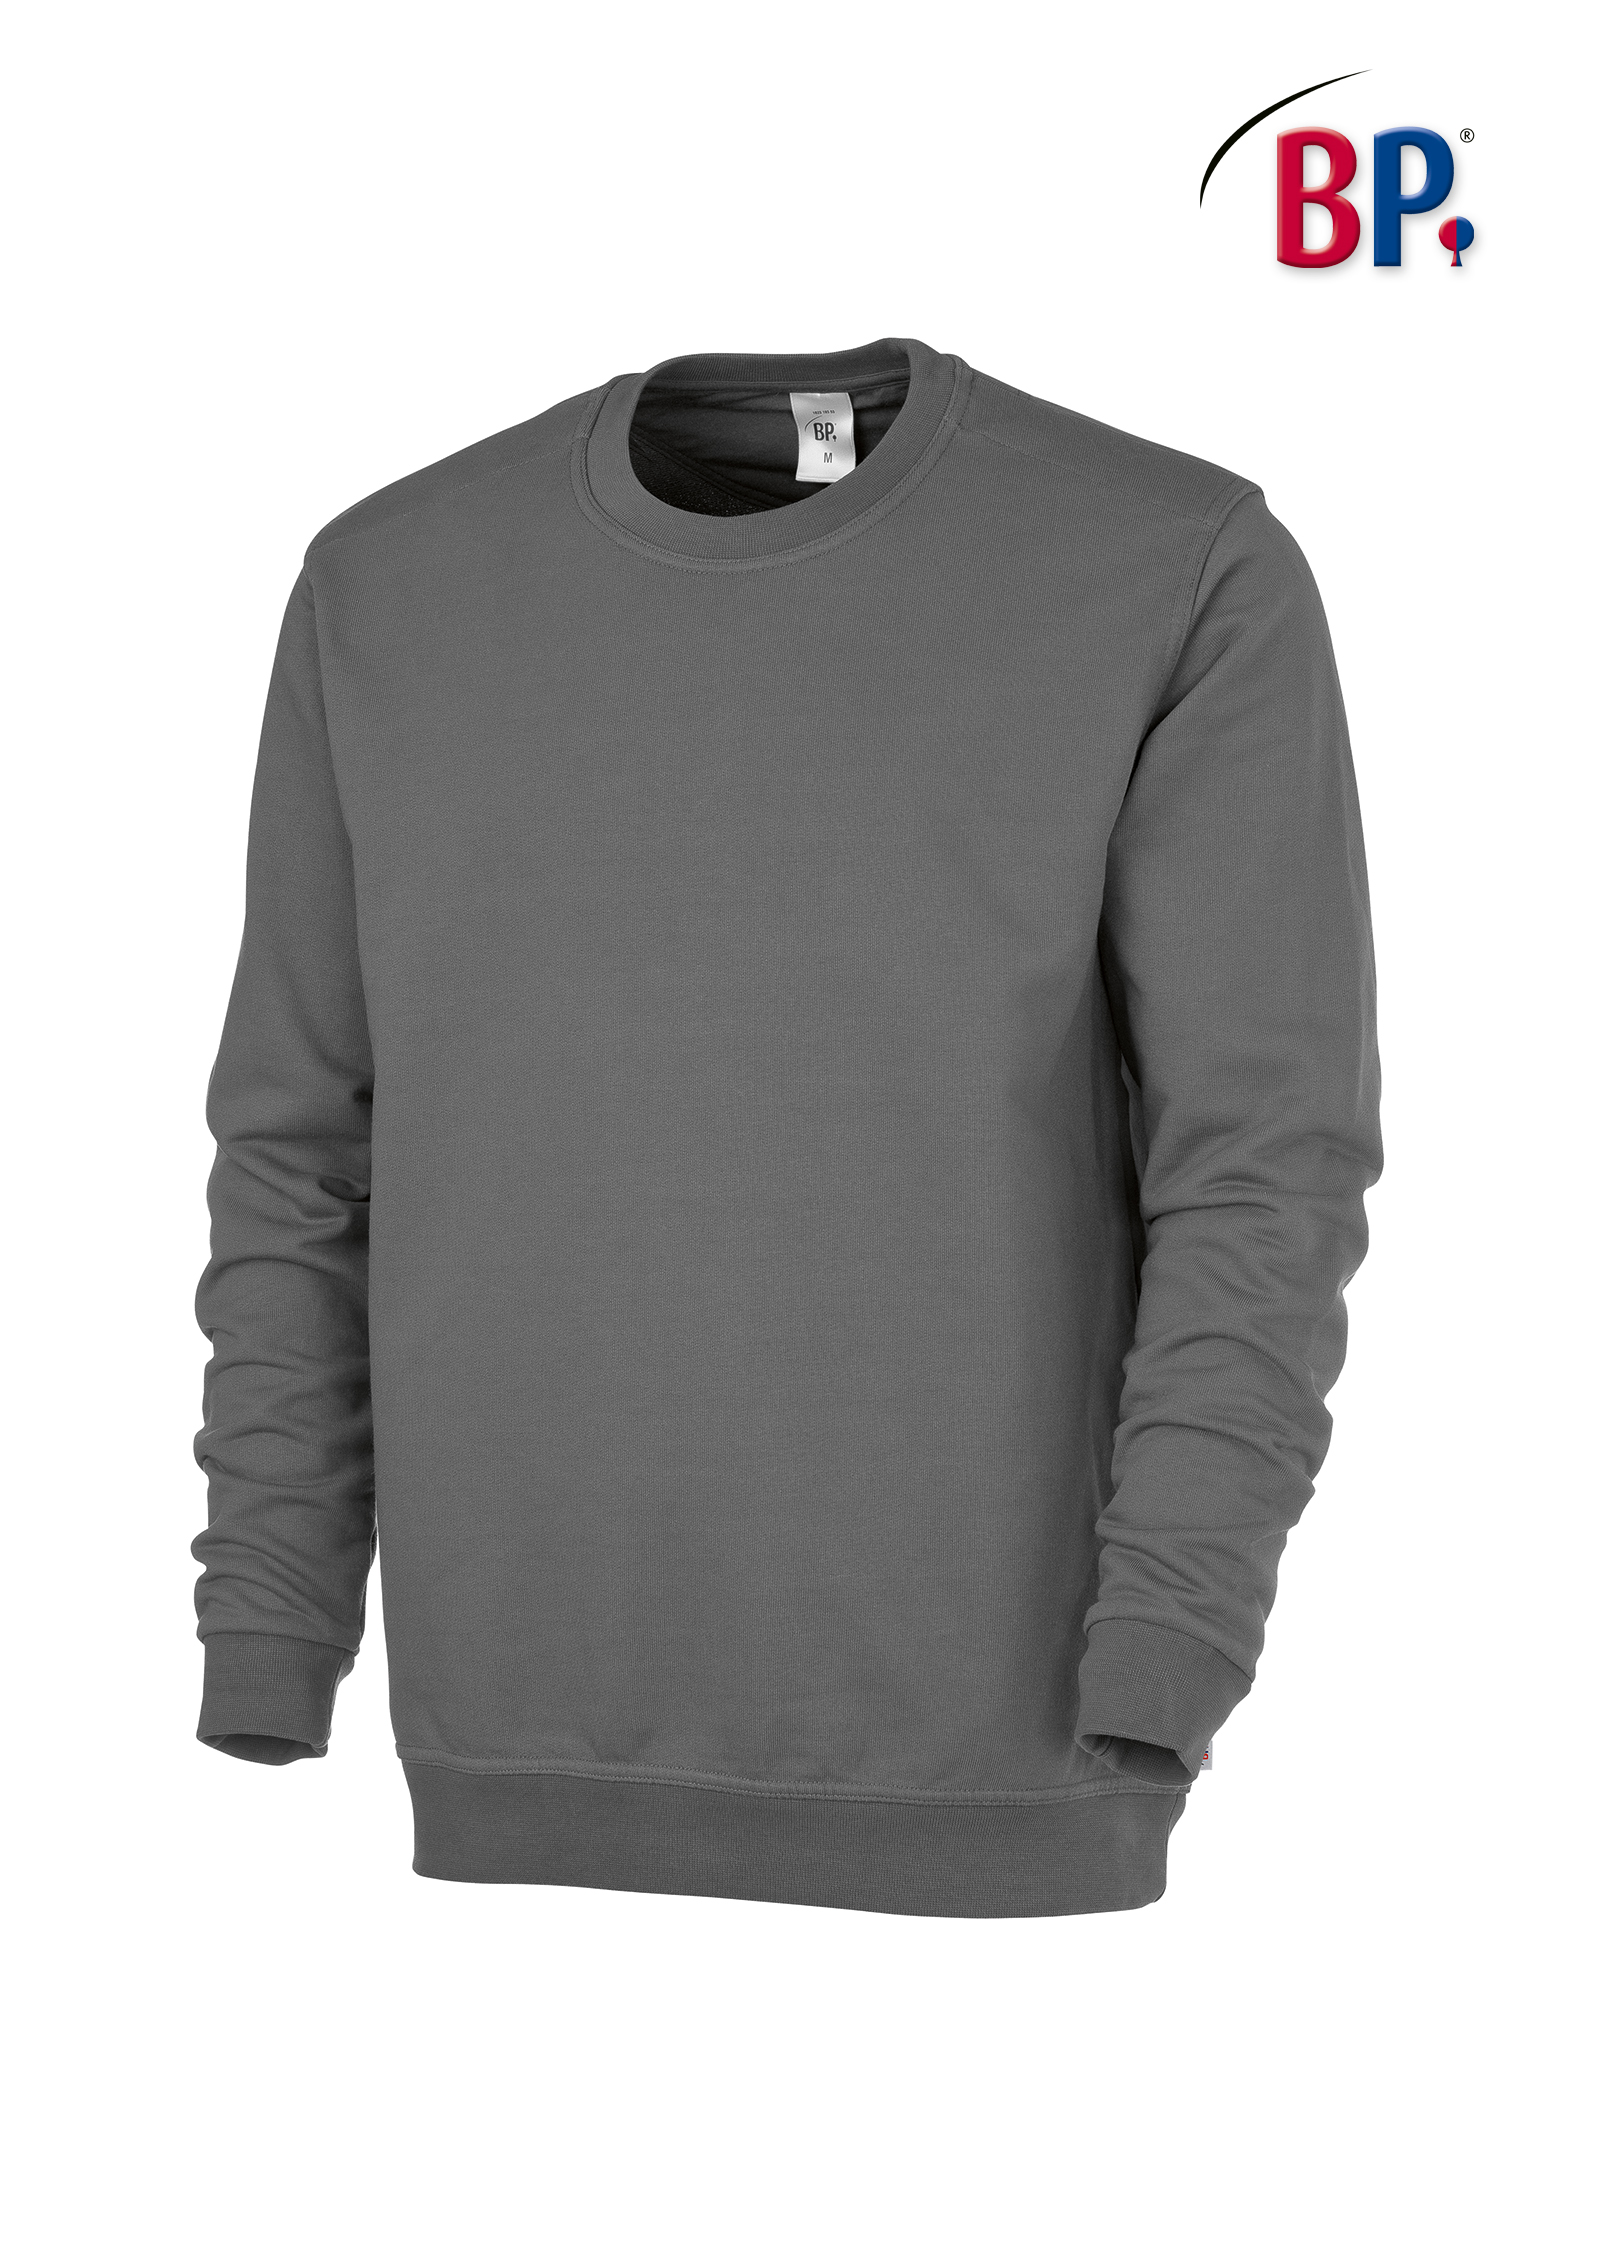 BP® Sweatshirt für Sie & Ihn - 1623